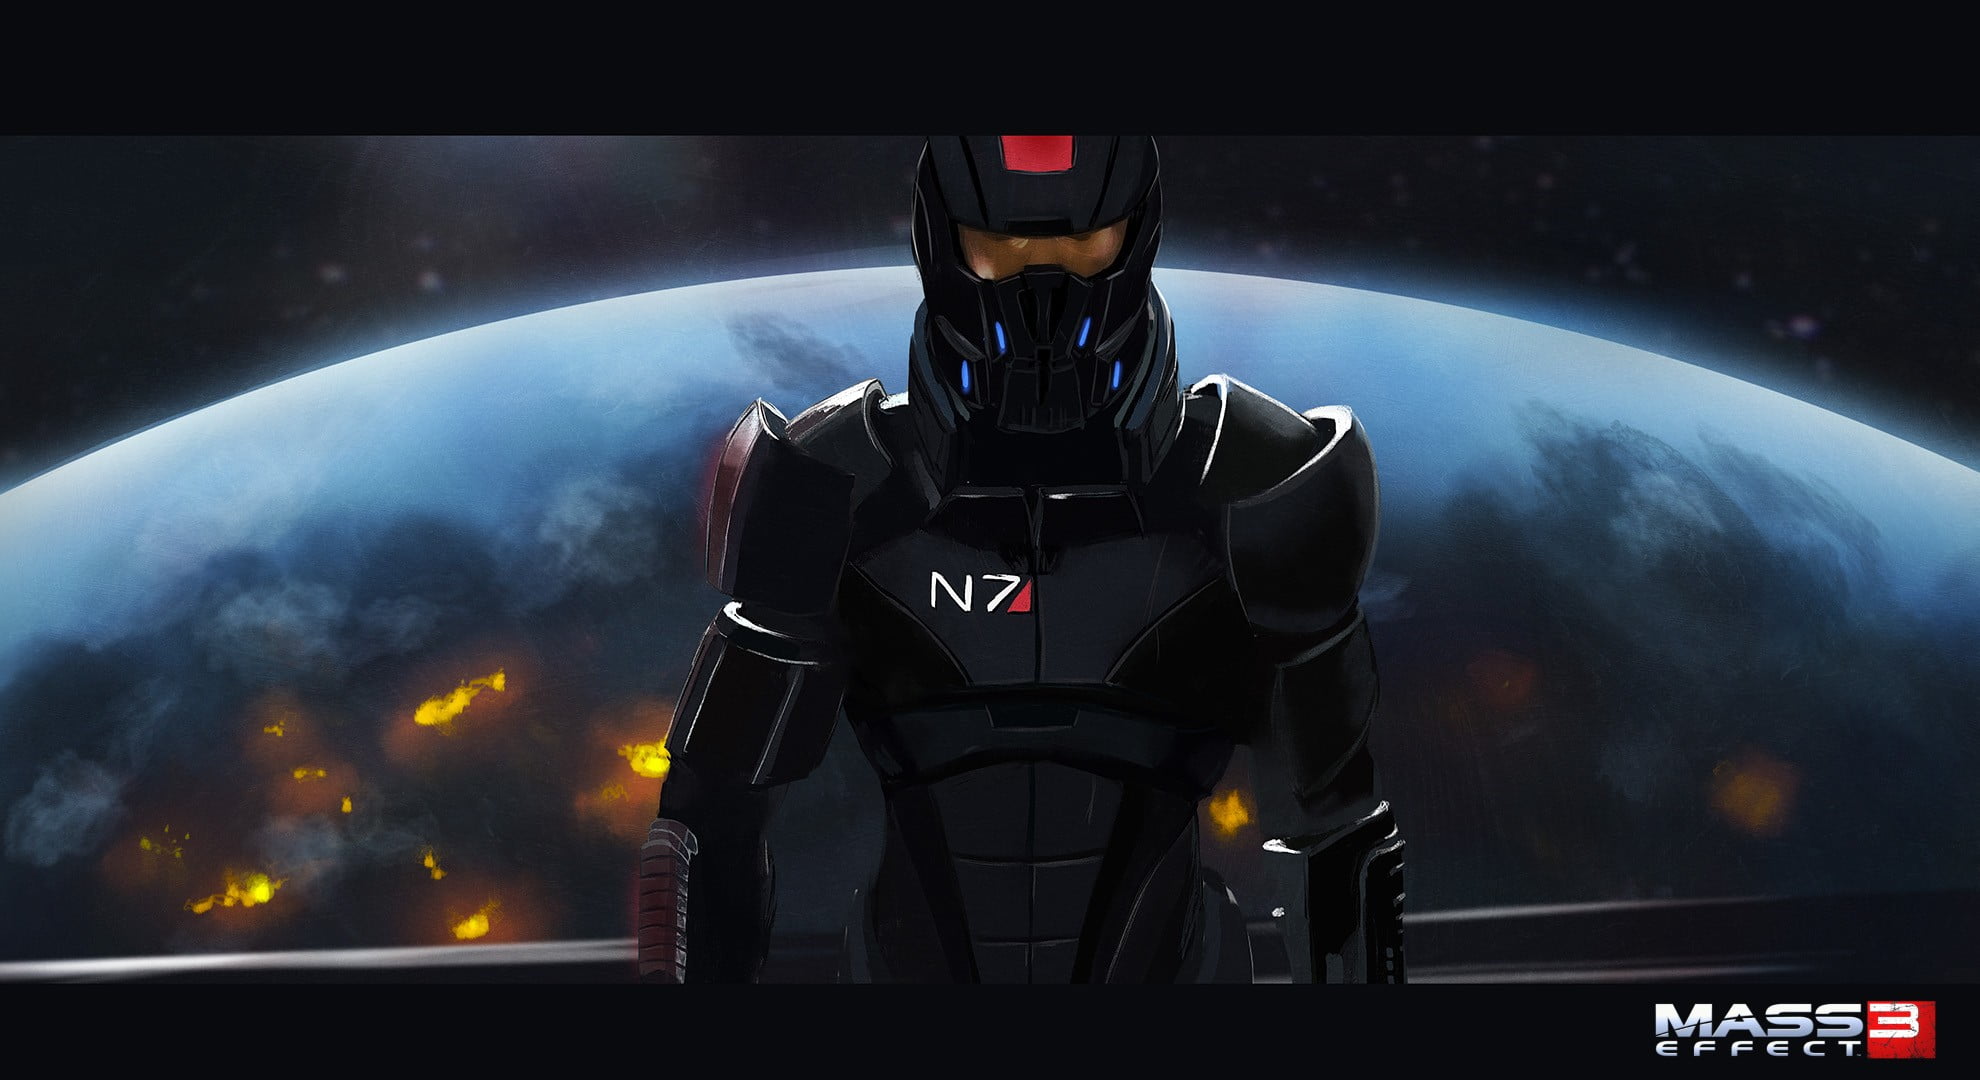 Mass Effect 3 digital wallpaper, Mass Effect 3, Mass Effect, video games